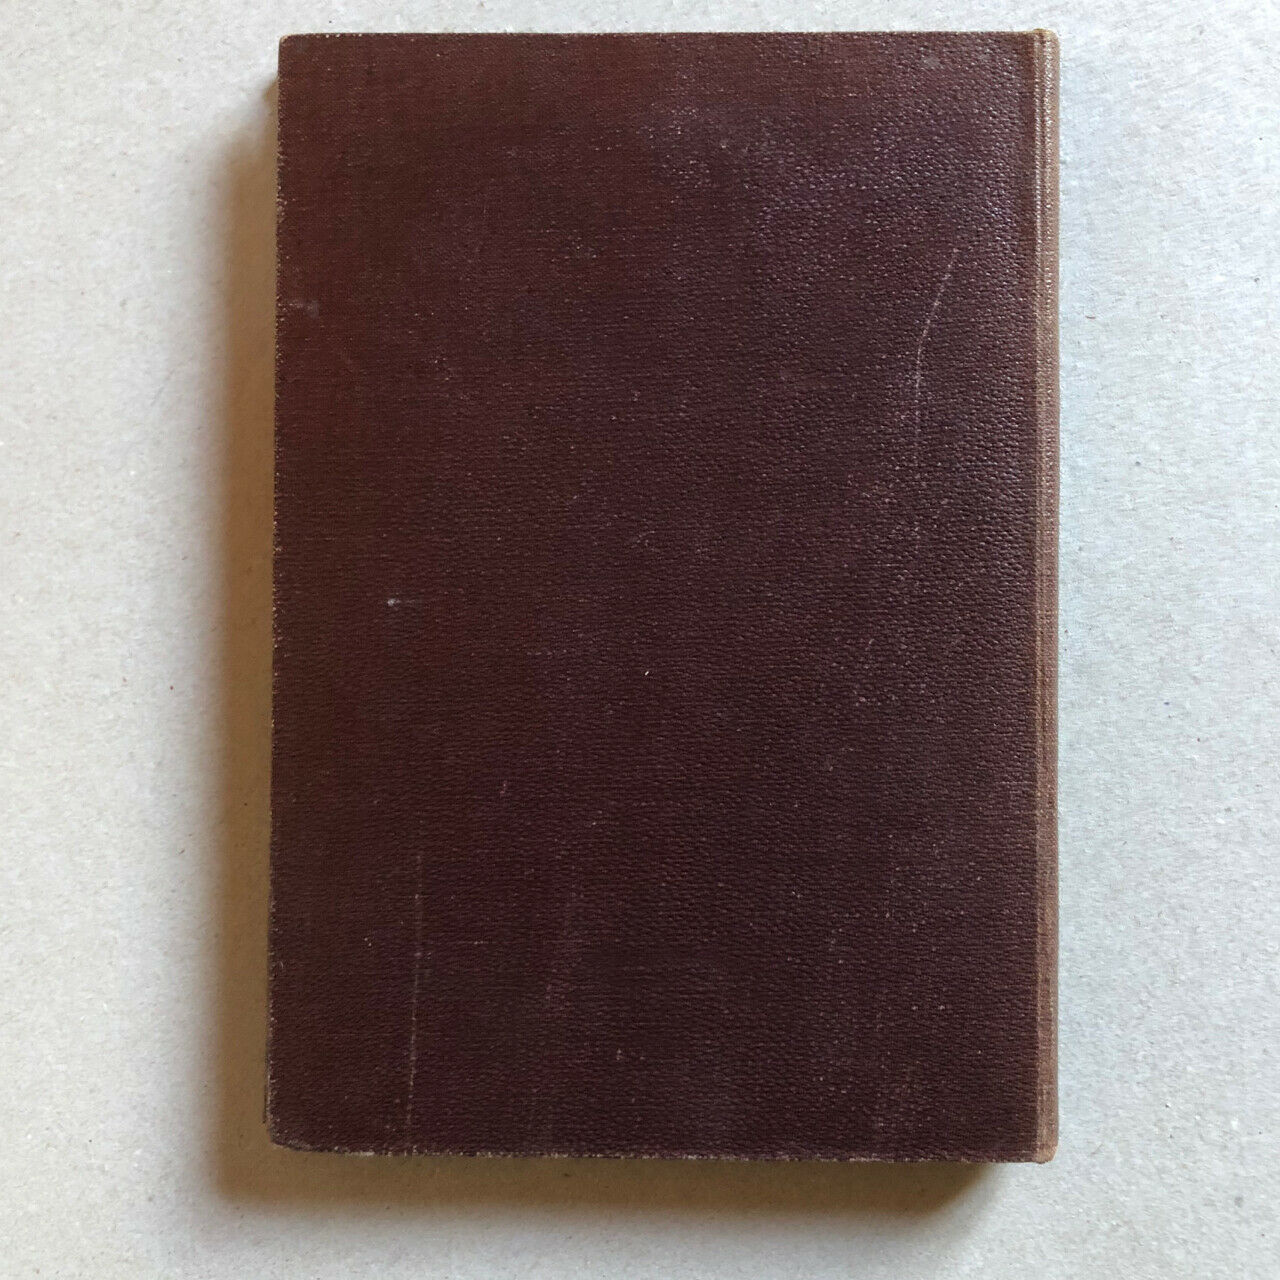 Bertall — Cahier des charges des chemins de fer — 2ème édition — Hetzel — 1847.